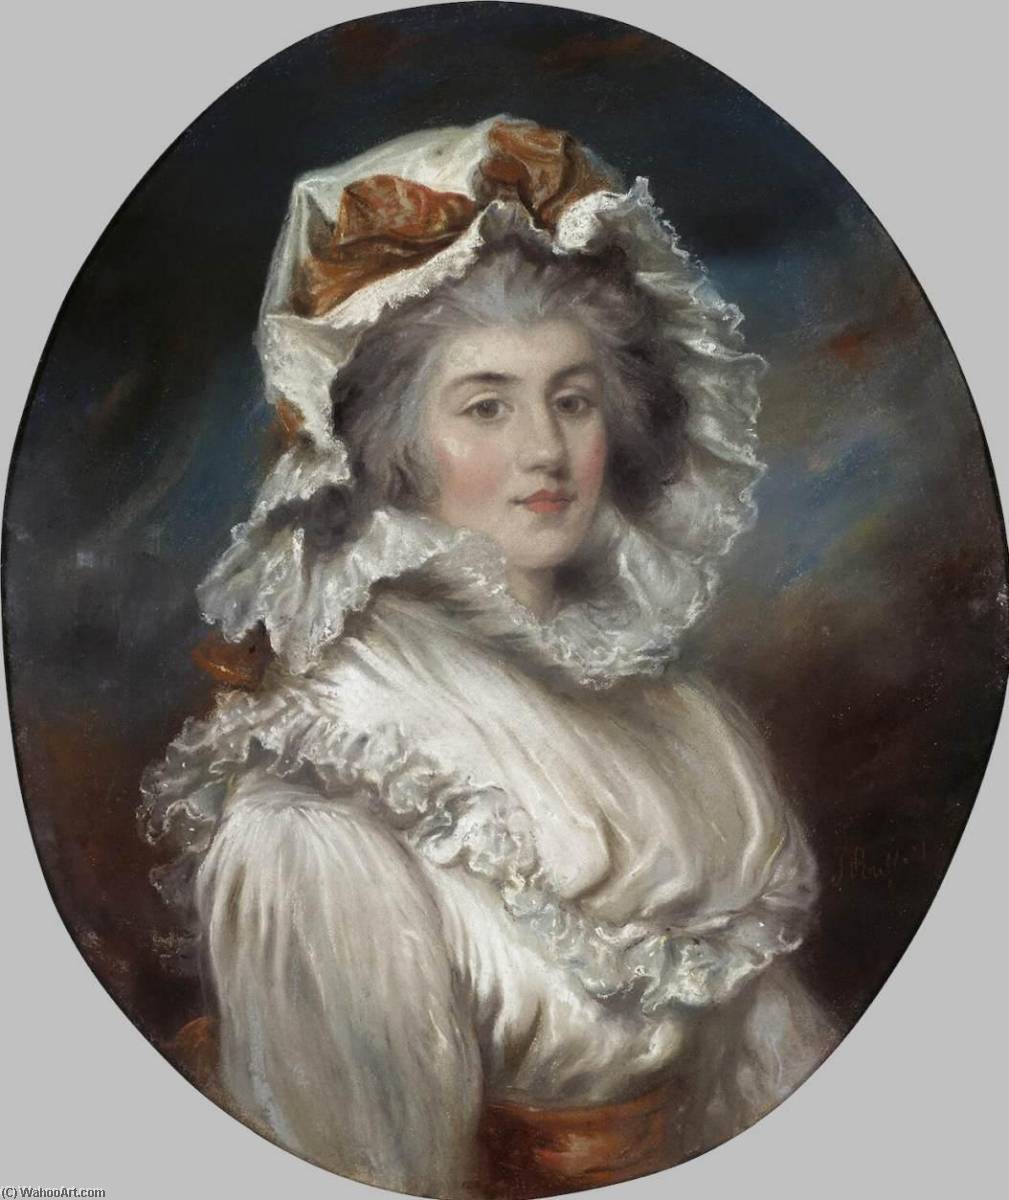 WikiOO.org - Encyclopedia of Fine Arts - Målning, konstverk John Russell - Portrait of a Girl in a Bonnet